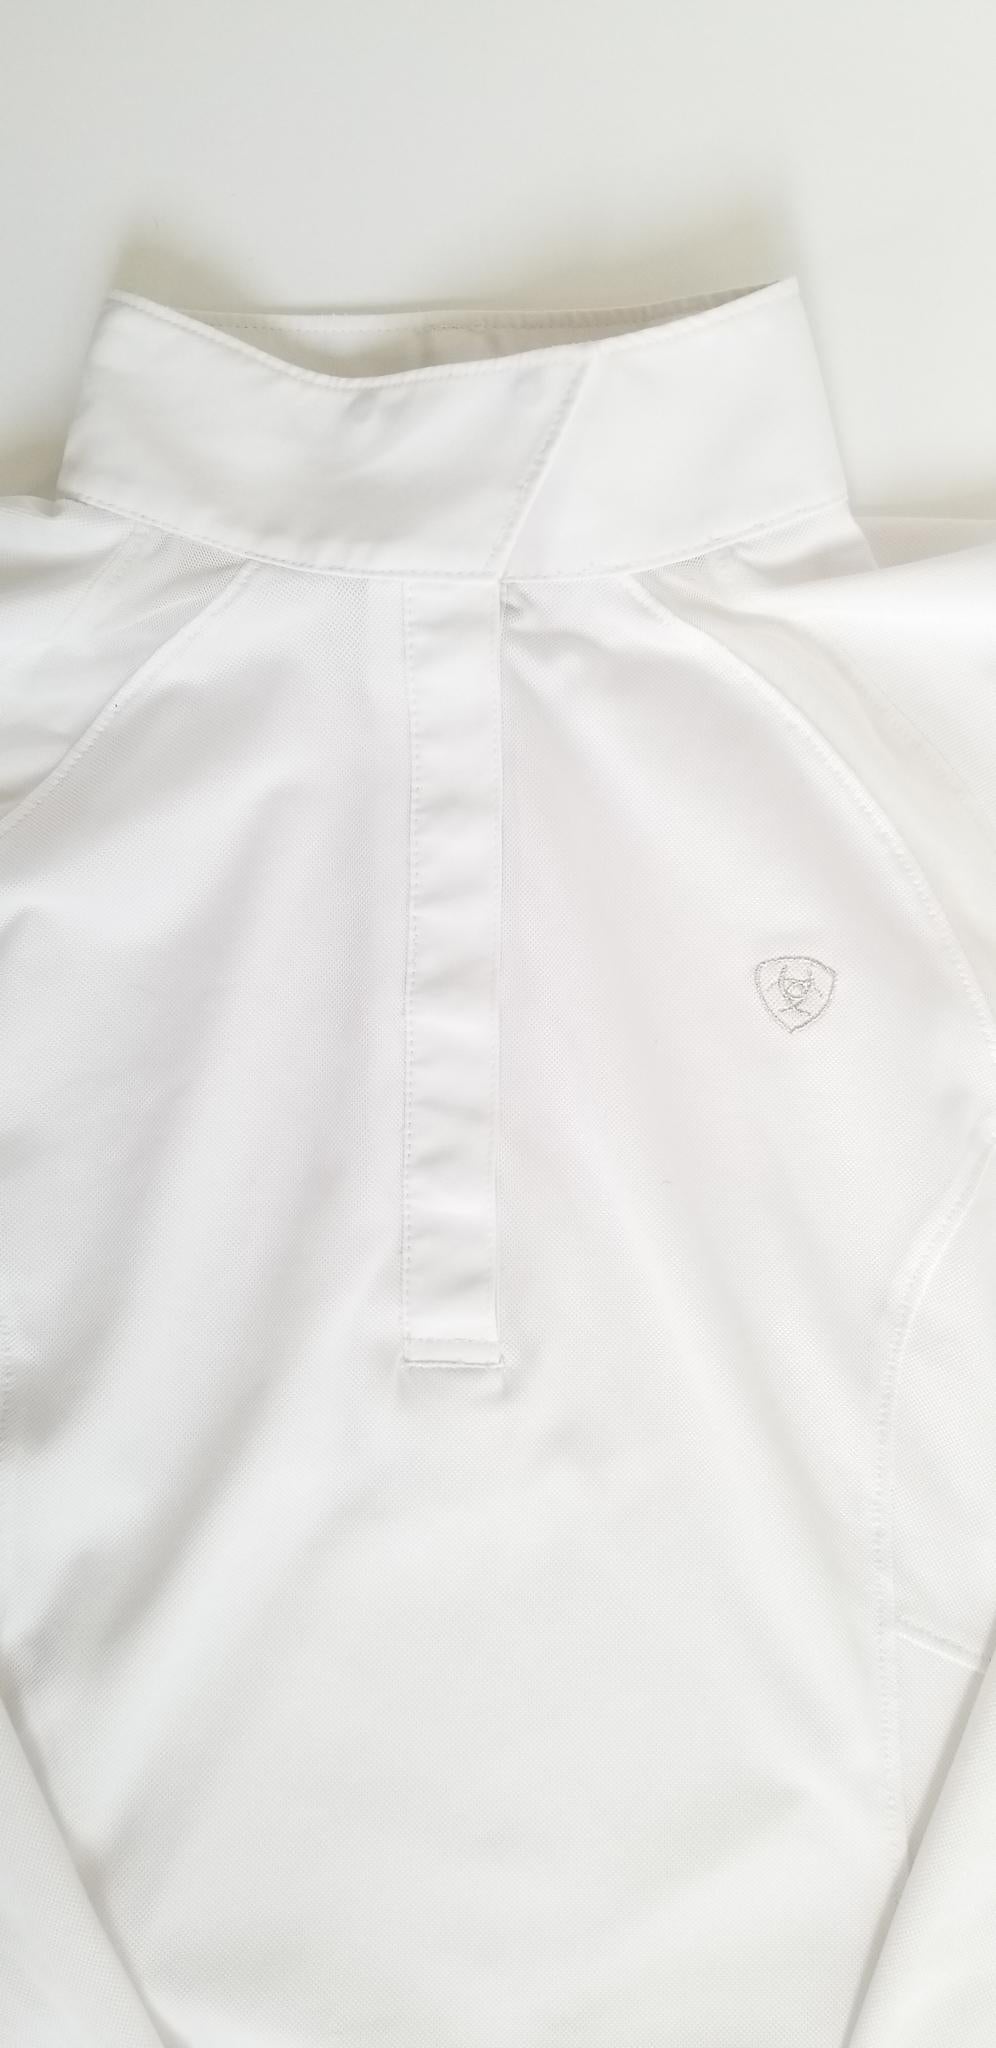 Ariat Sunstopper 2.0 Ladies Long Sleeve Show Shirt - White - Medium